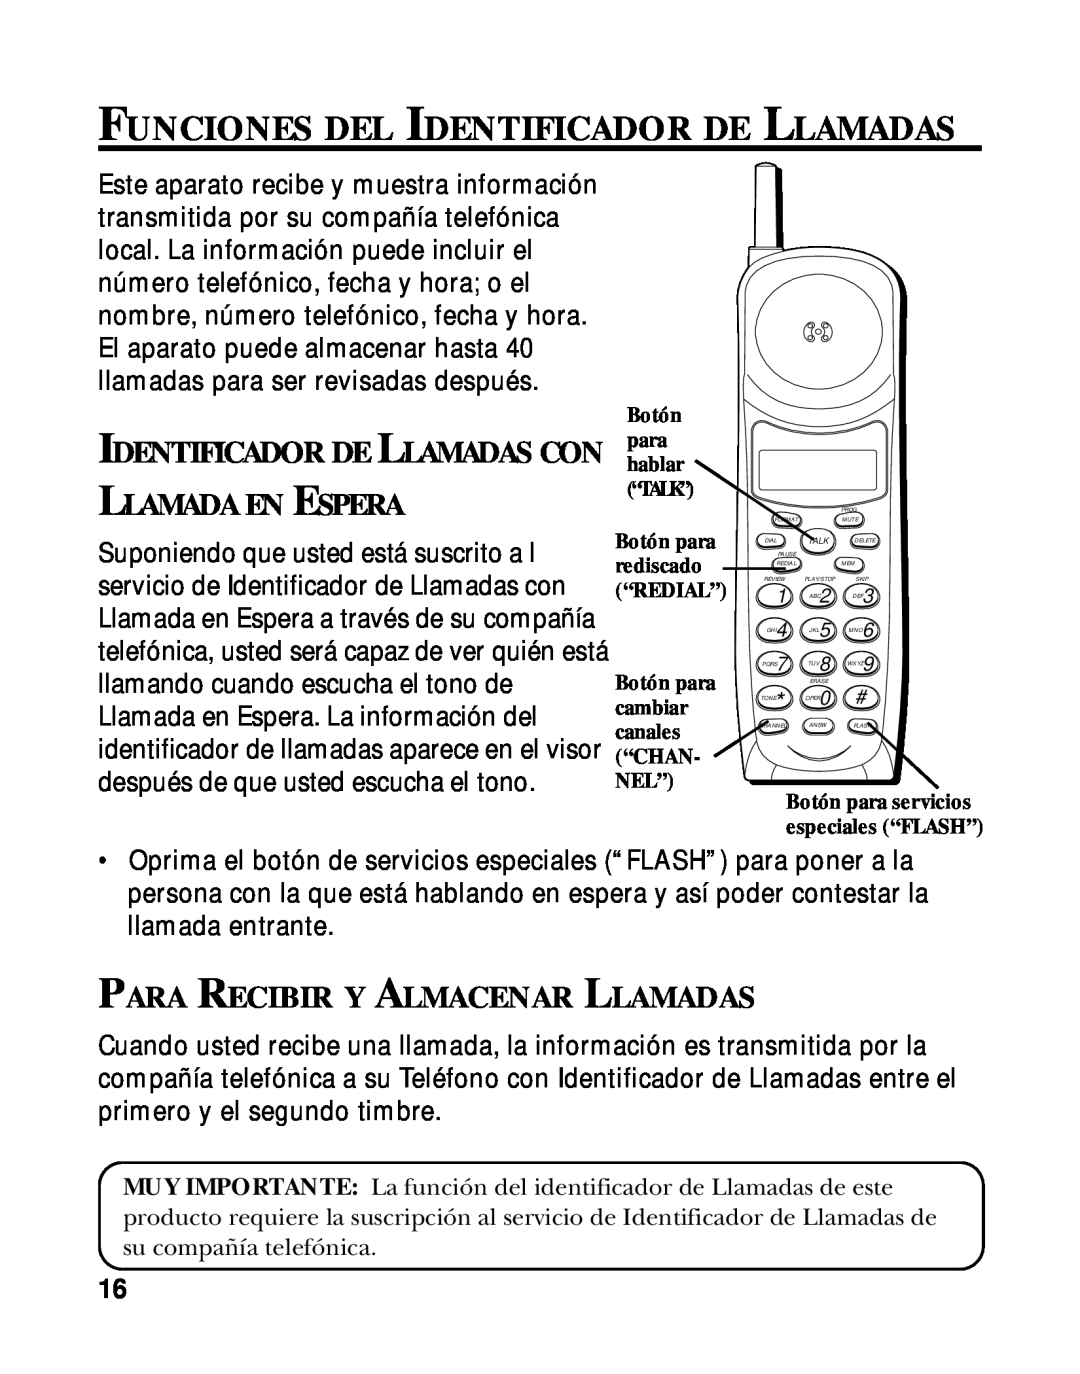 RCA 900 MHz manual Funciones Del Identificador De Llamadas, Lamada En Spera, Para Recibir Y Almacenar Llamadas 